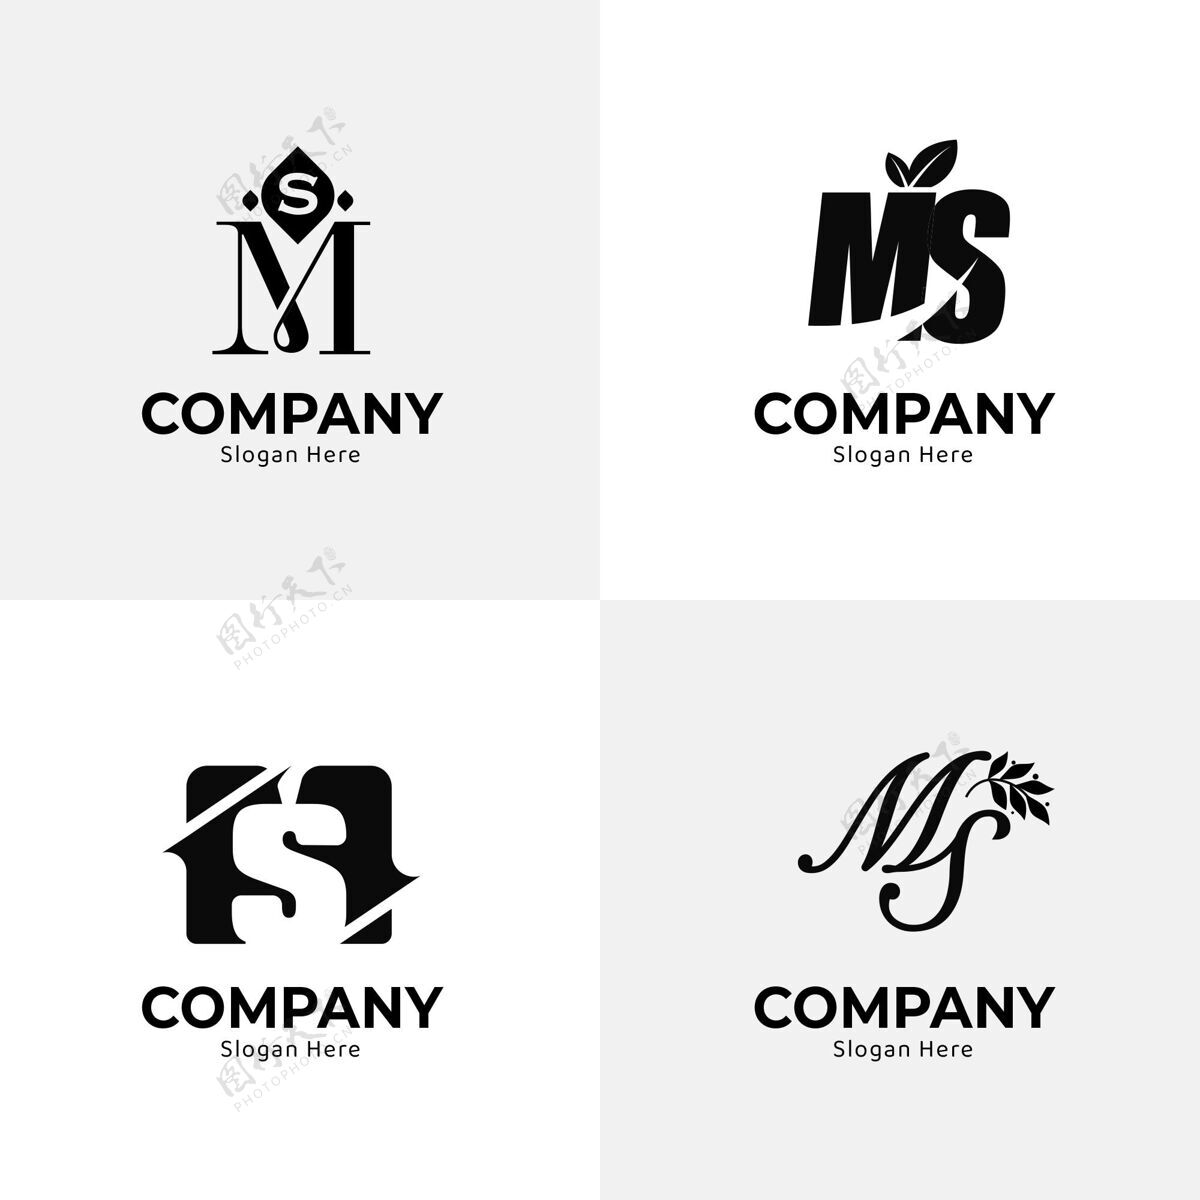 企业标识平面设计ms标志系列品牌平面设计公司标识